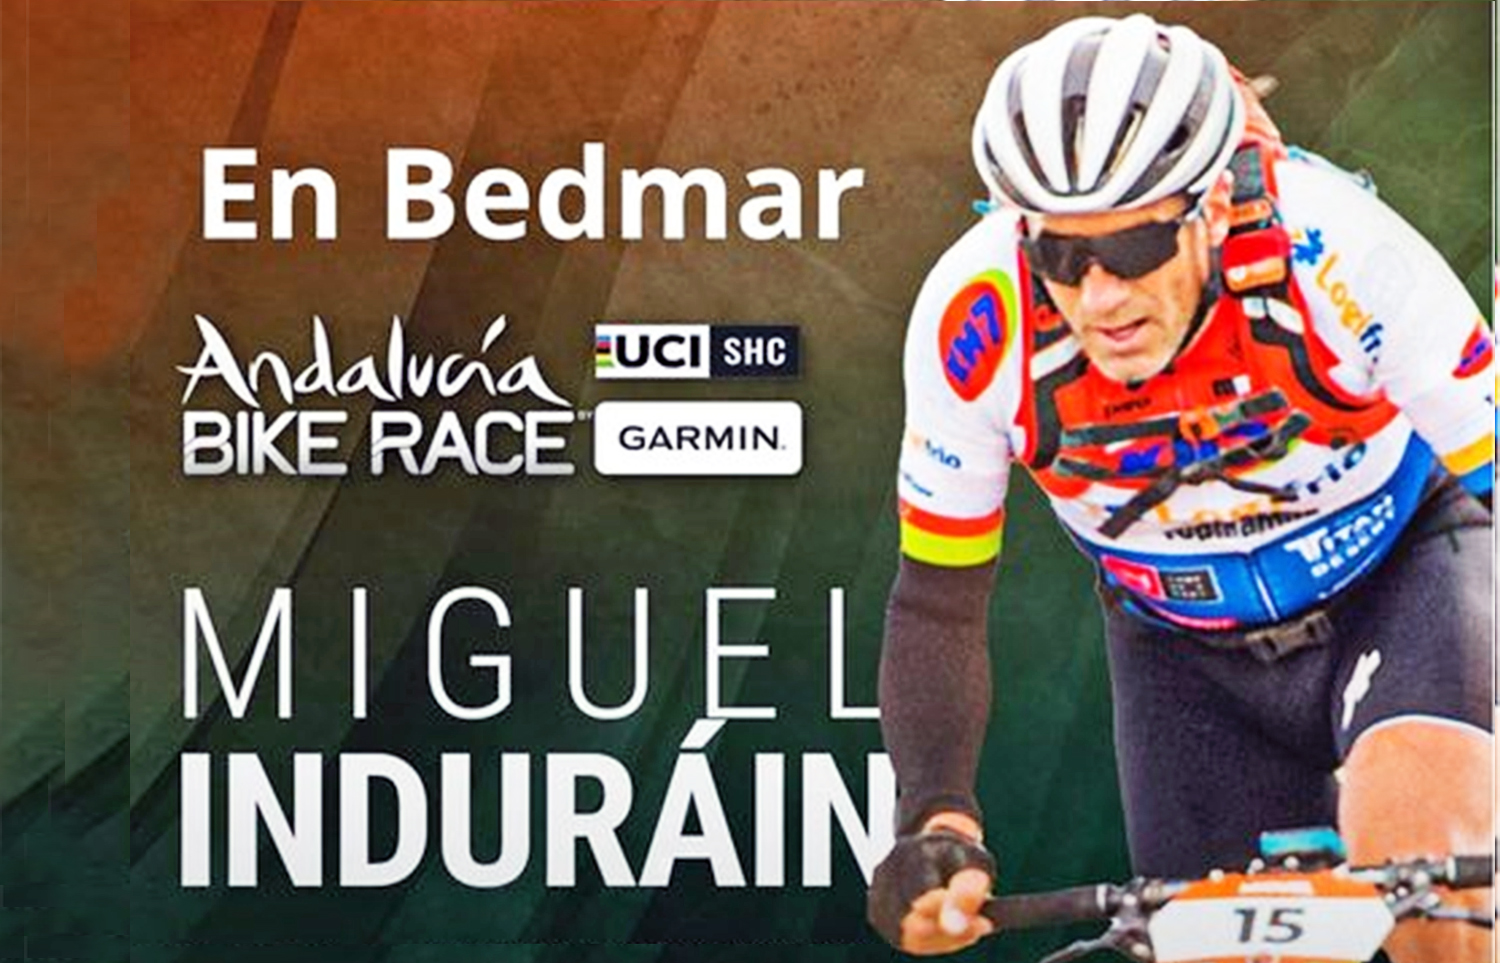 El ciclista navarro Miguel Induráin estará en la primera etapa de la Andalucía Bike Race que se desarrollará en Bedmar el 26 de febrero